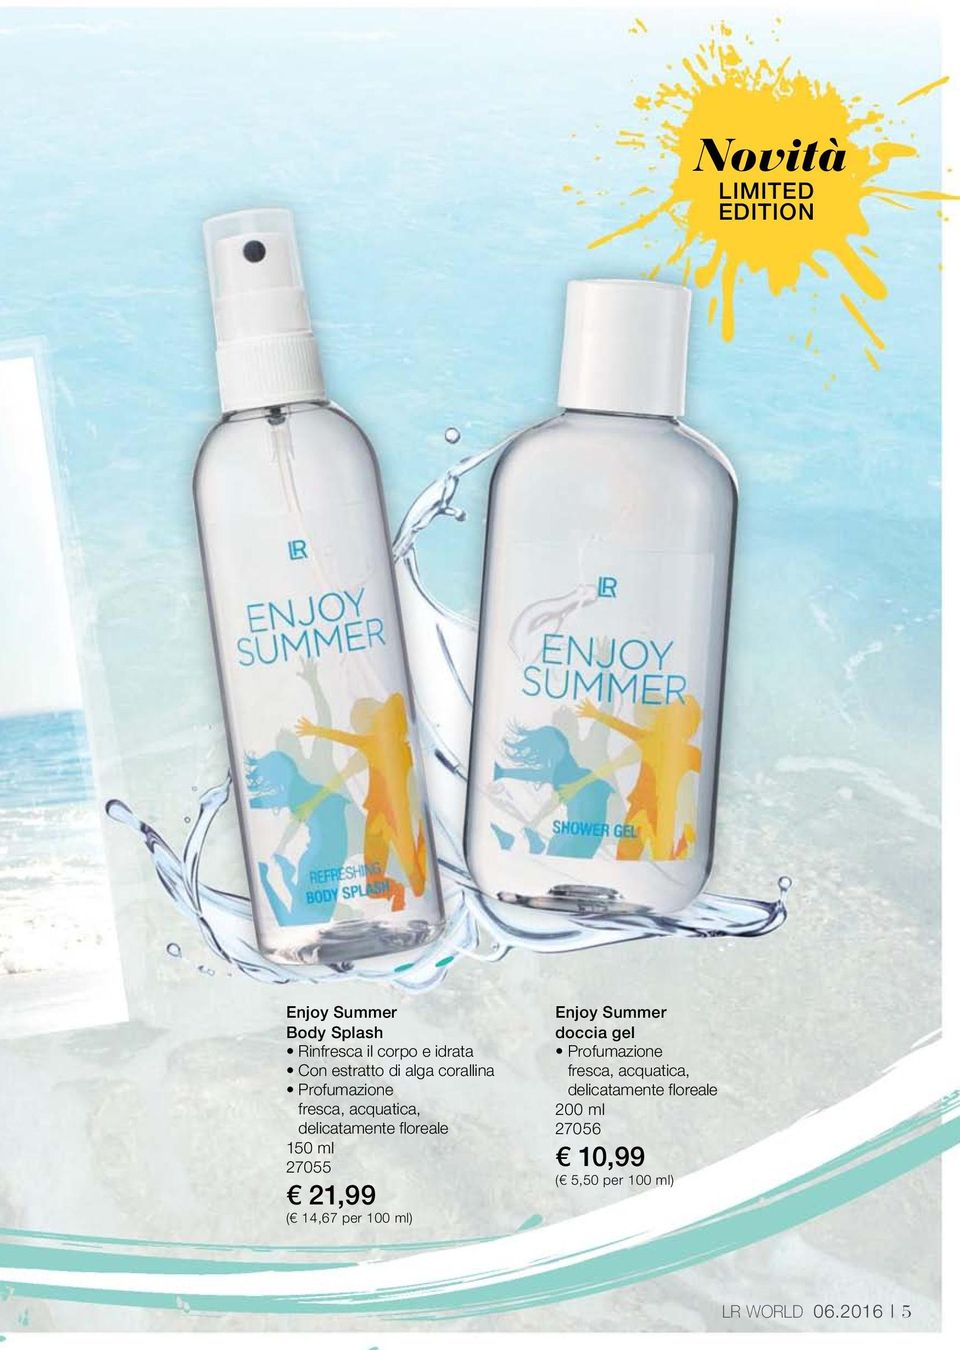 150 ml 27055 21,99 ( 14,67 per 100 ml) Enjoy Summer doccia gel Profumazione fresca,